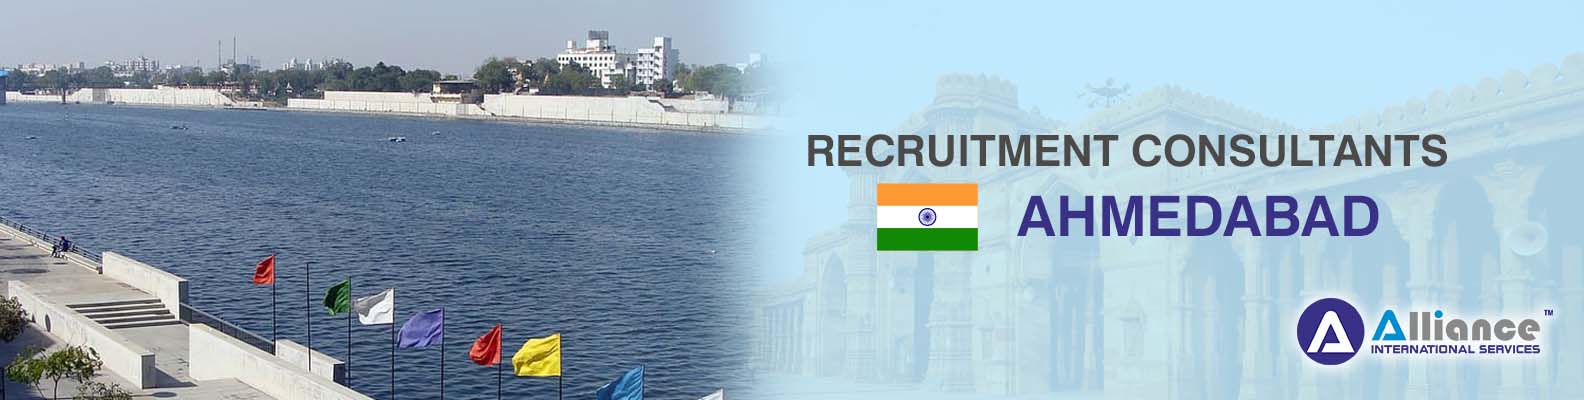 Recruitment Consultants Ahmedabad